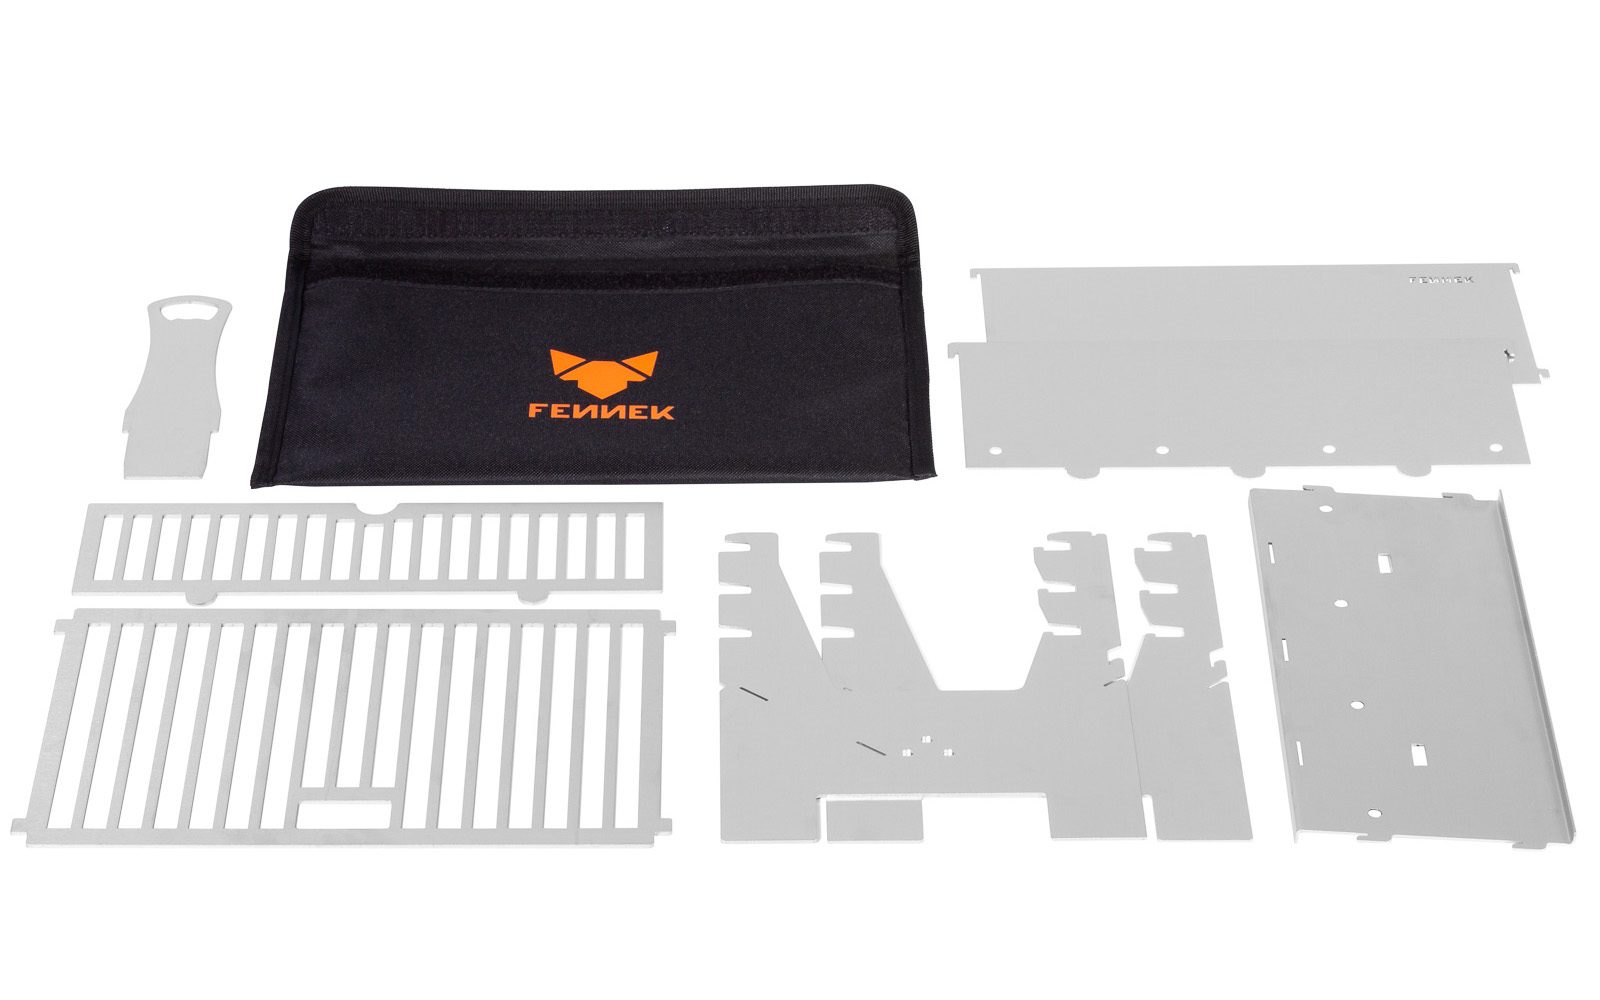 Schwarze Nylon-Tasche mit FENNEK Logo-Aufdruck in orange und daneben und davor Einzelteile aus Edelstahl für einen zusammensteckbaren Holzkohlegrill.